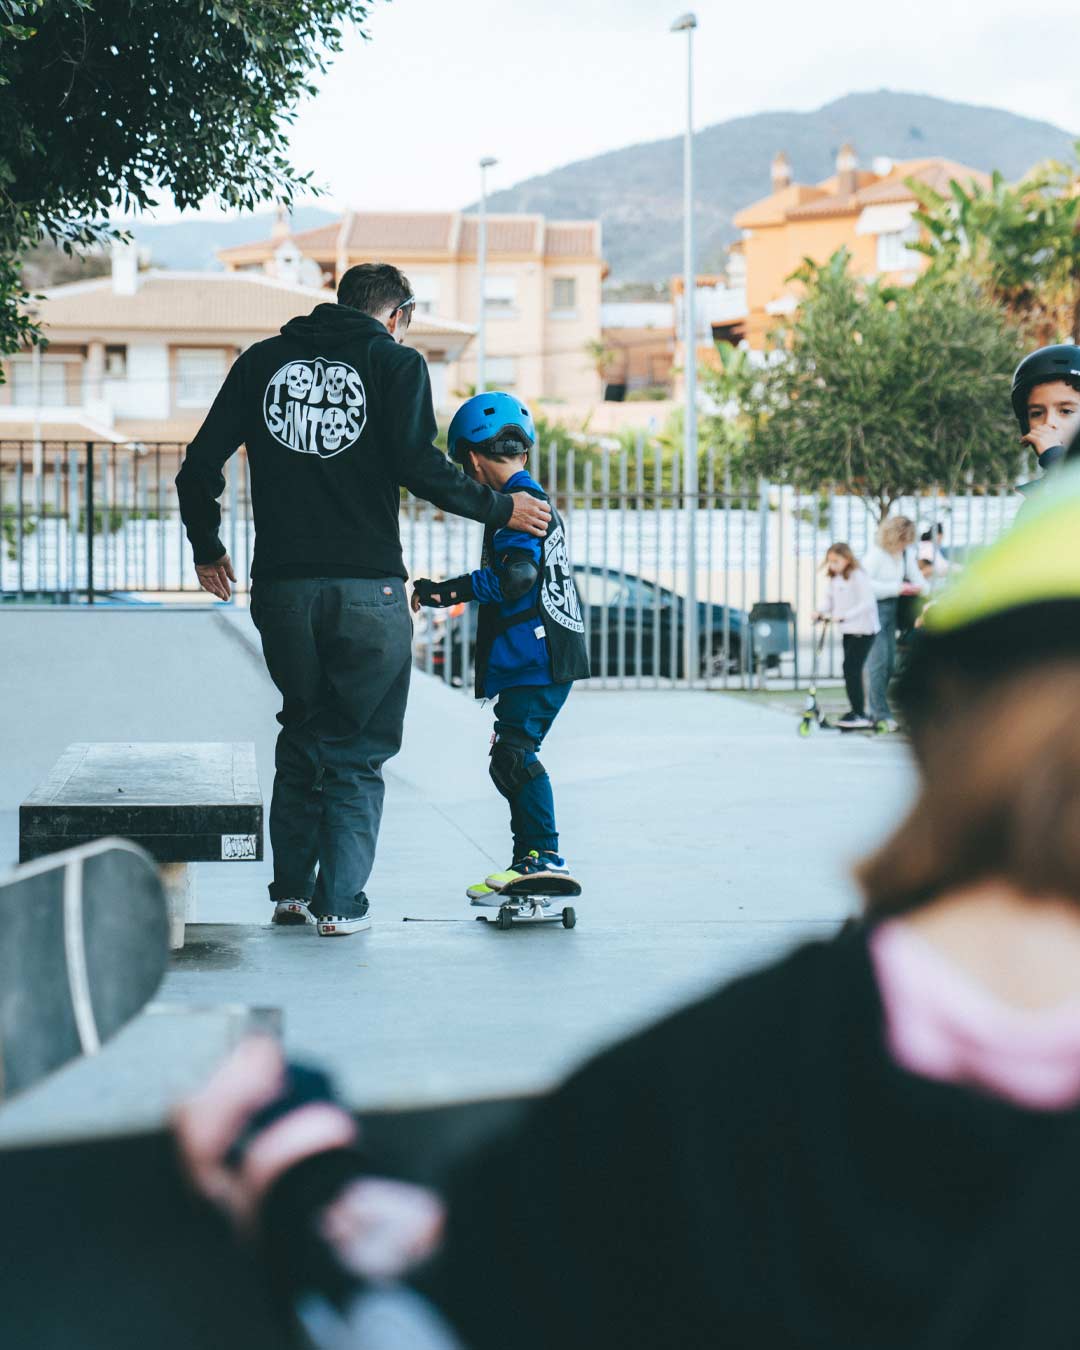 Skate-para-niños-en-malaga